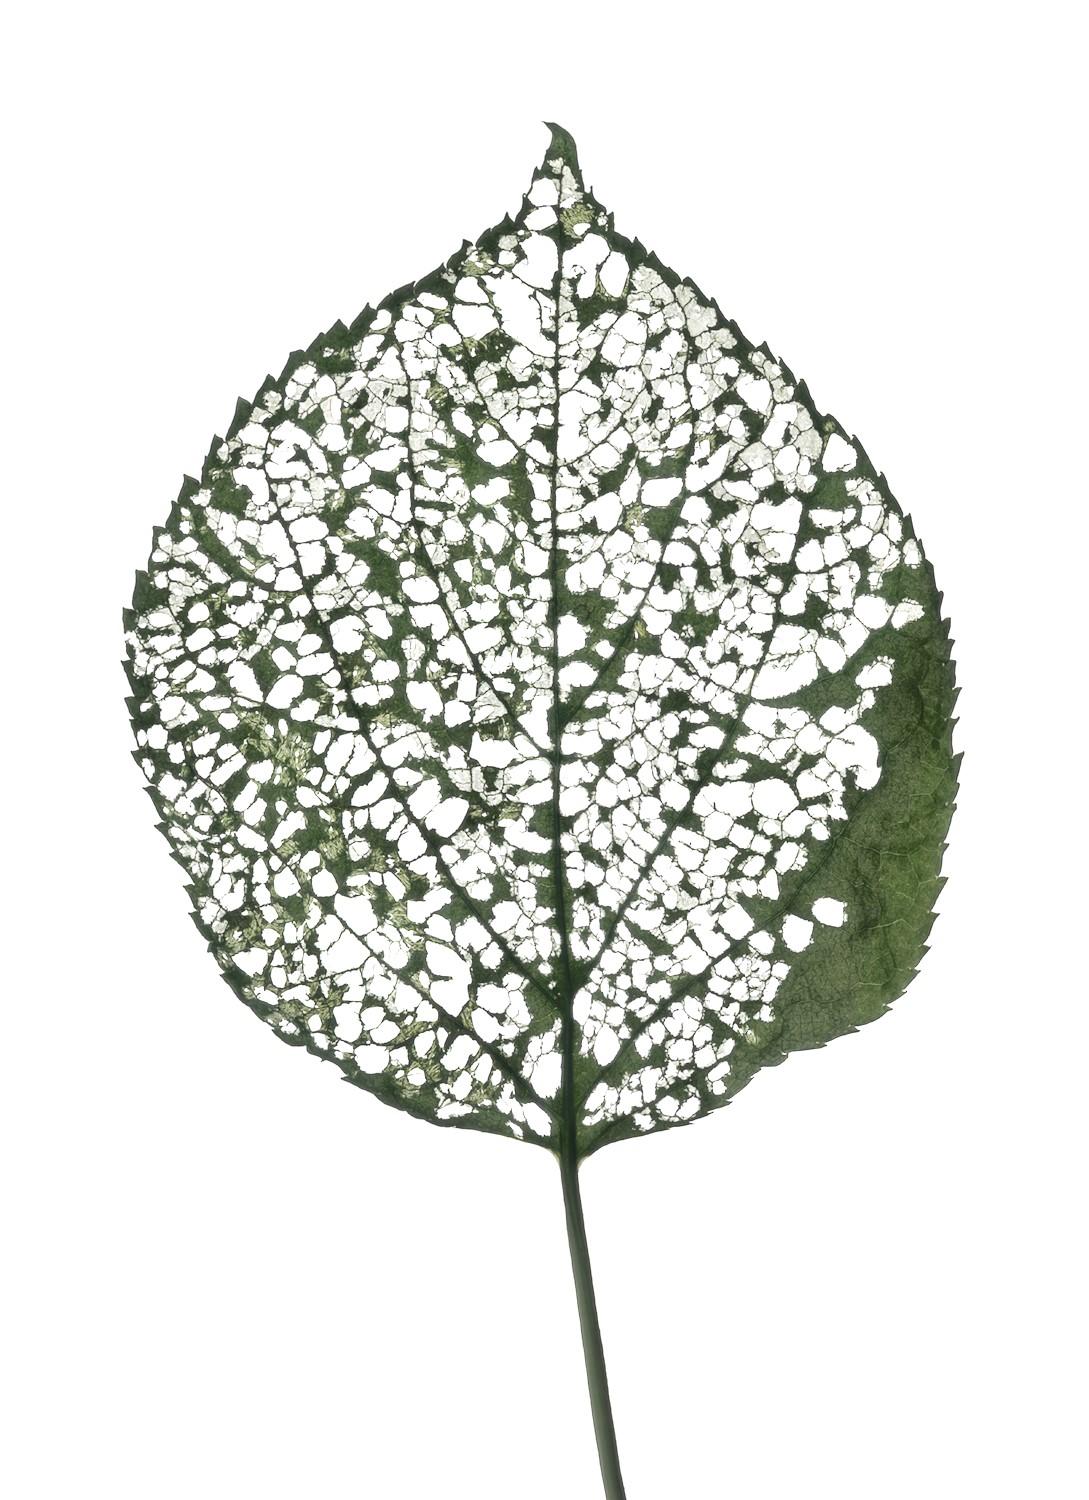 Chad Kleitsch Still-Life Photograph - Eaten Leaf- #115: Still Life Color Scanography Photograph of a Green Leaf